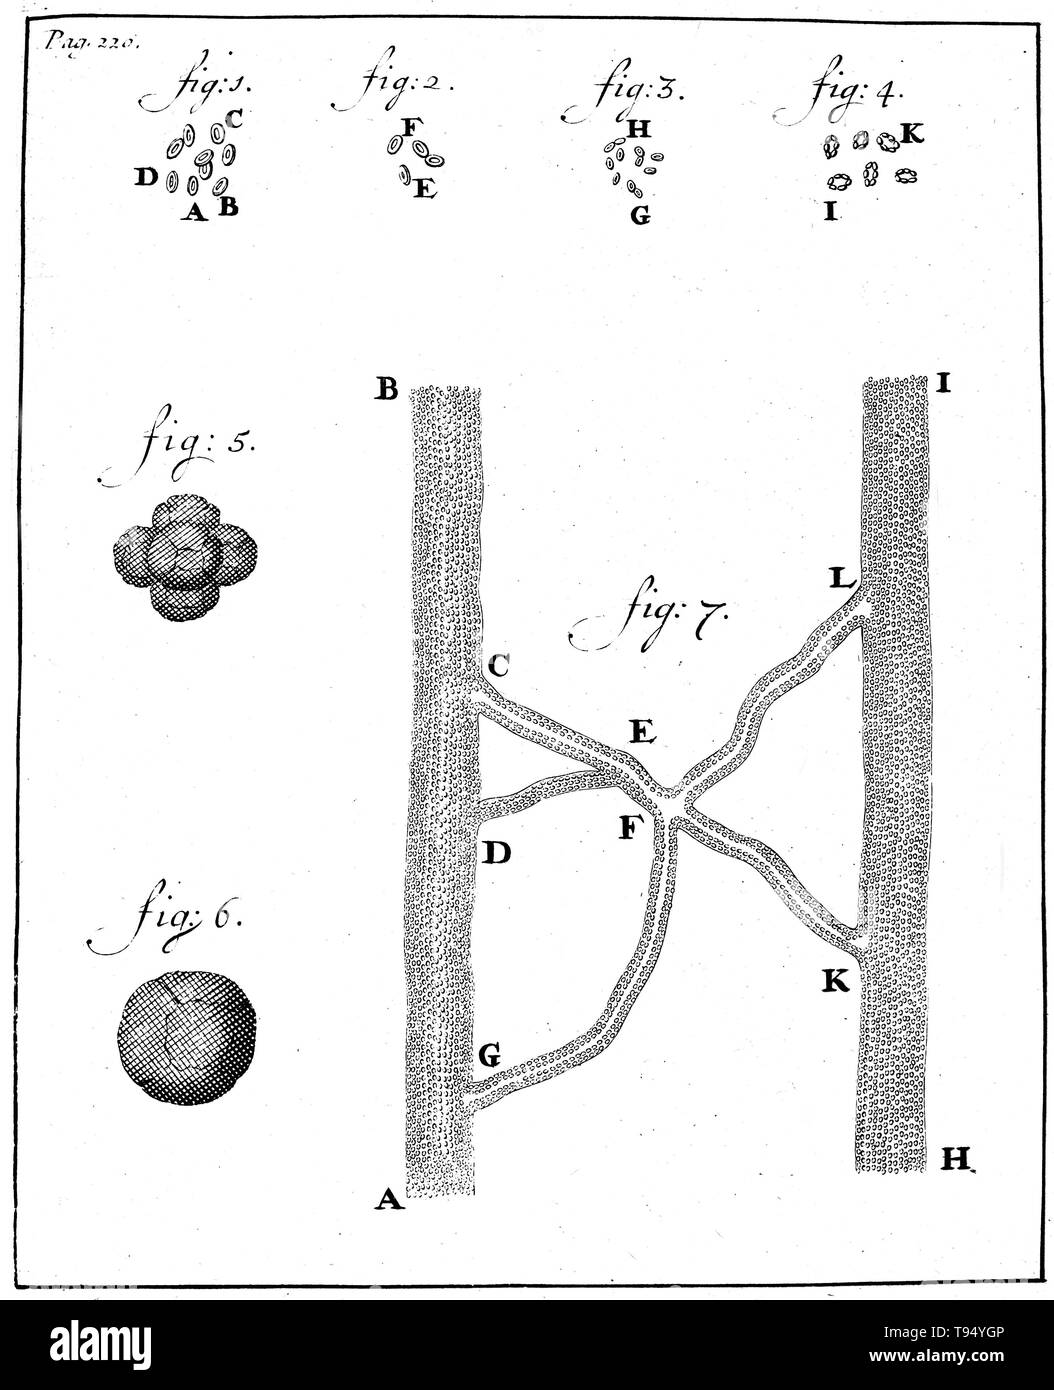 Globules rouges, Antoine van Leeuwenhoek, 1719. Gravure sur bois montrant les spermatozoïdes de lapin (figs. 1 à 4) et le chien (figs. 5-8), observé et dessiné par Antoine van Leeuwenhoek, 1677. Leeuwenhoek (1632-1723) était un scientifique hollandais, aujourd'hui considéré comme le premier microbiologiste. Il est surtout connu pour ses travaux sur l'amélioration du microscope et pour ses contributions à l'établissement de microbiologie. Banque D'Images